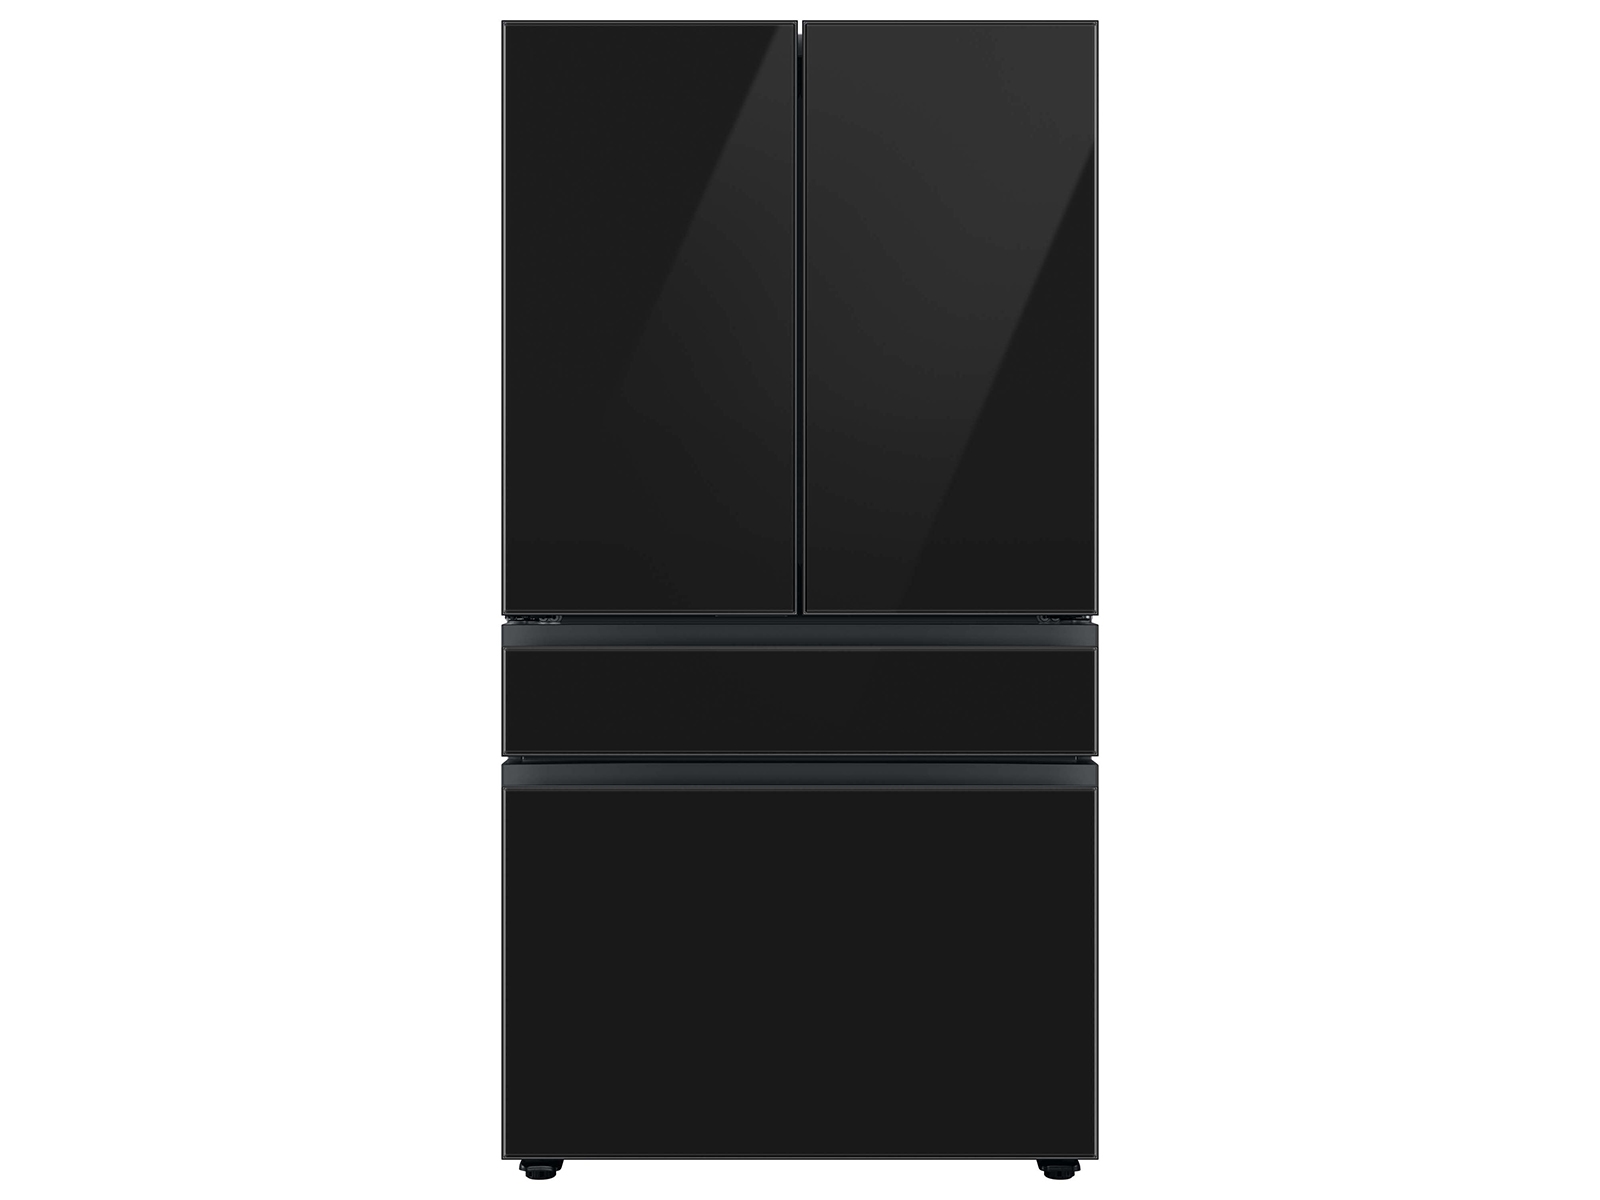 Bespoke 4-Door French Door Refrigerator (29 cu. ft.) with Customizable Door Panel Colors and Beverage Center™ in Charcoal Glass